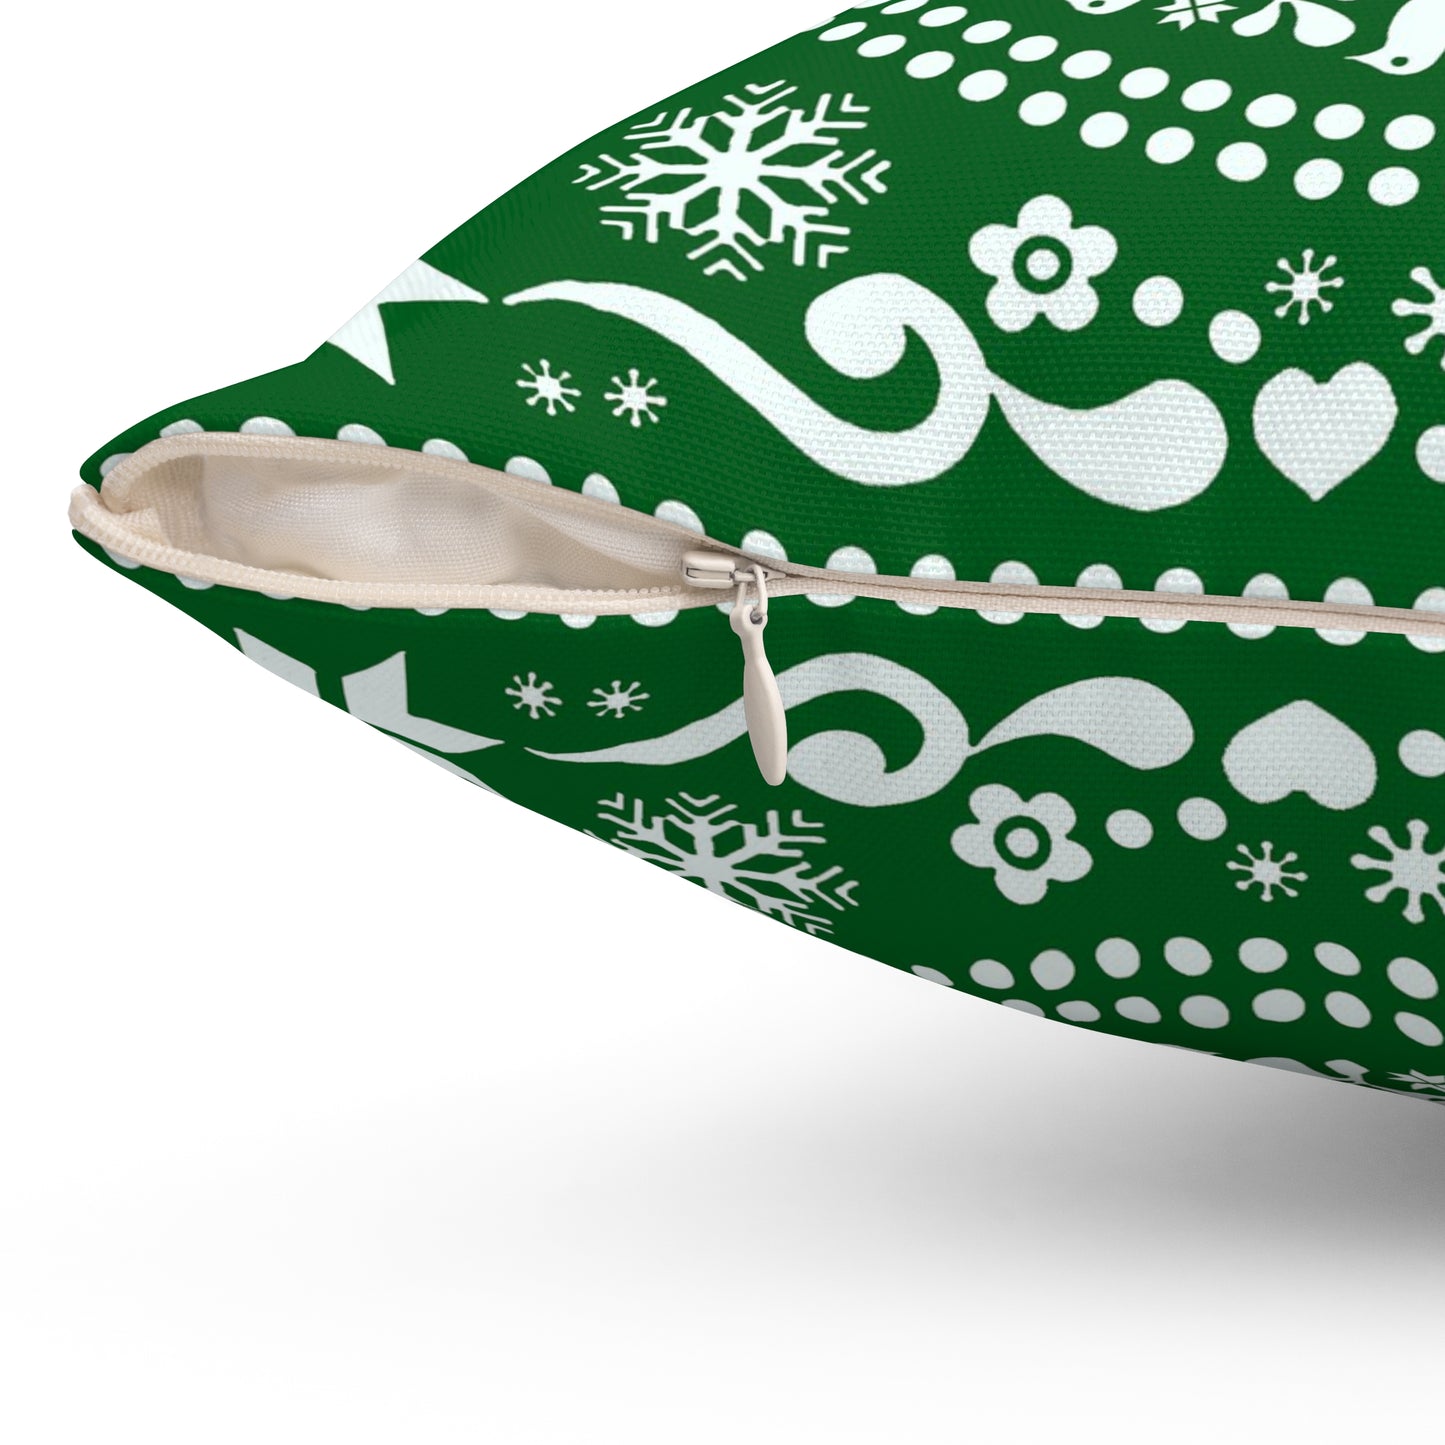 Charming Green Christmas Folk Art Pillow